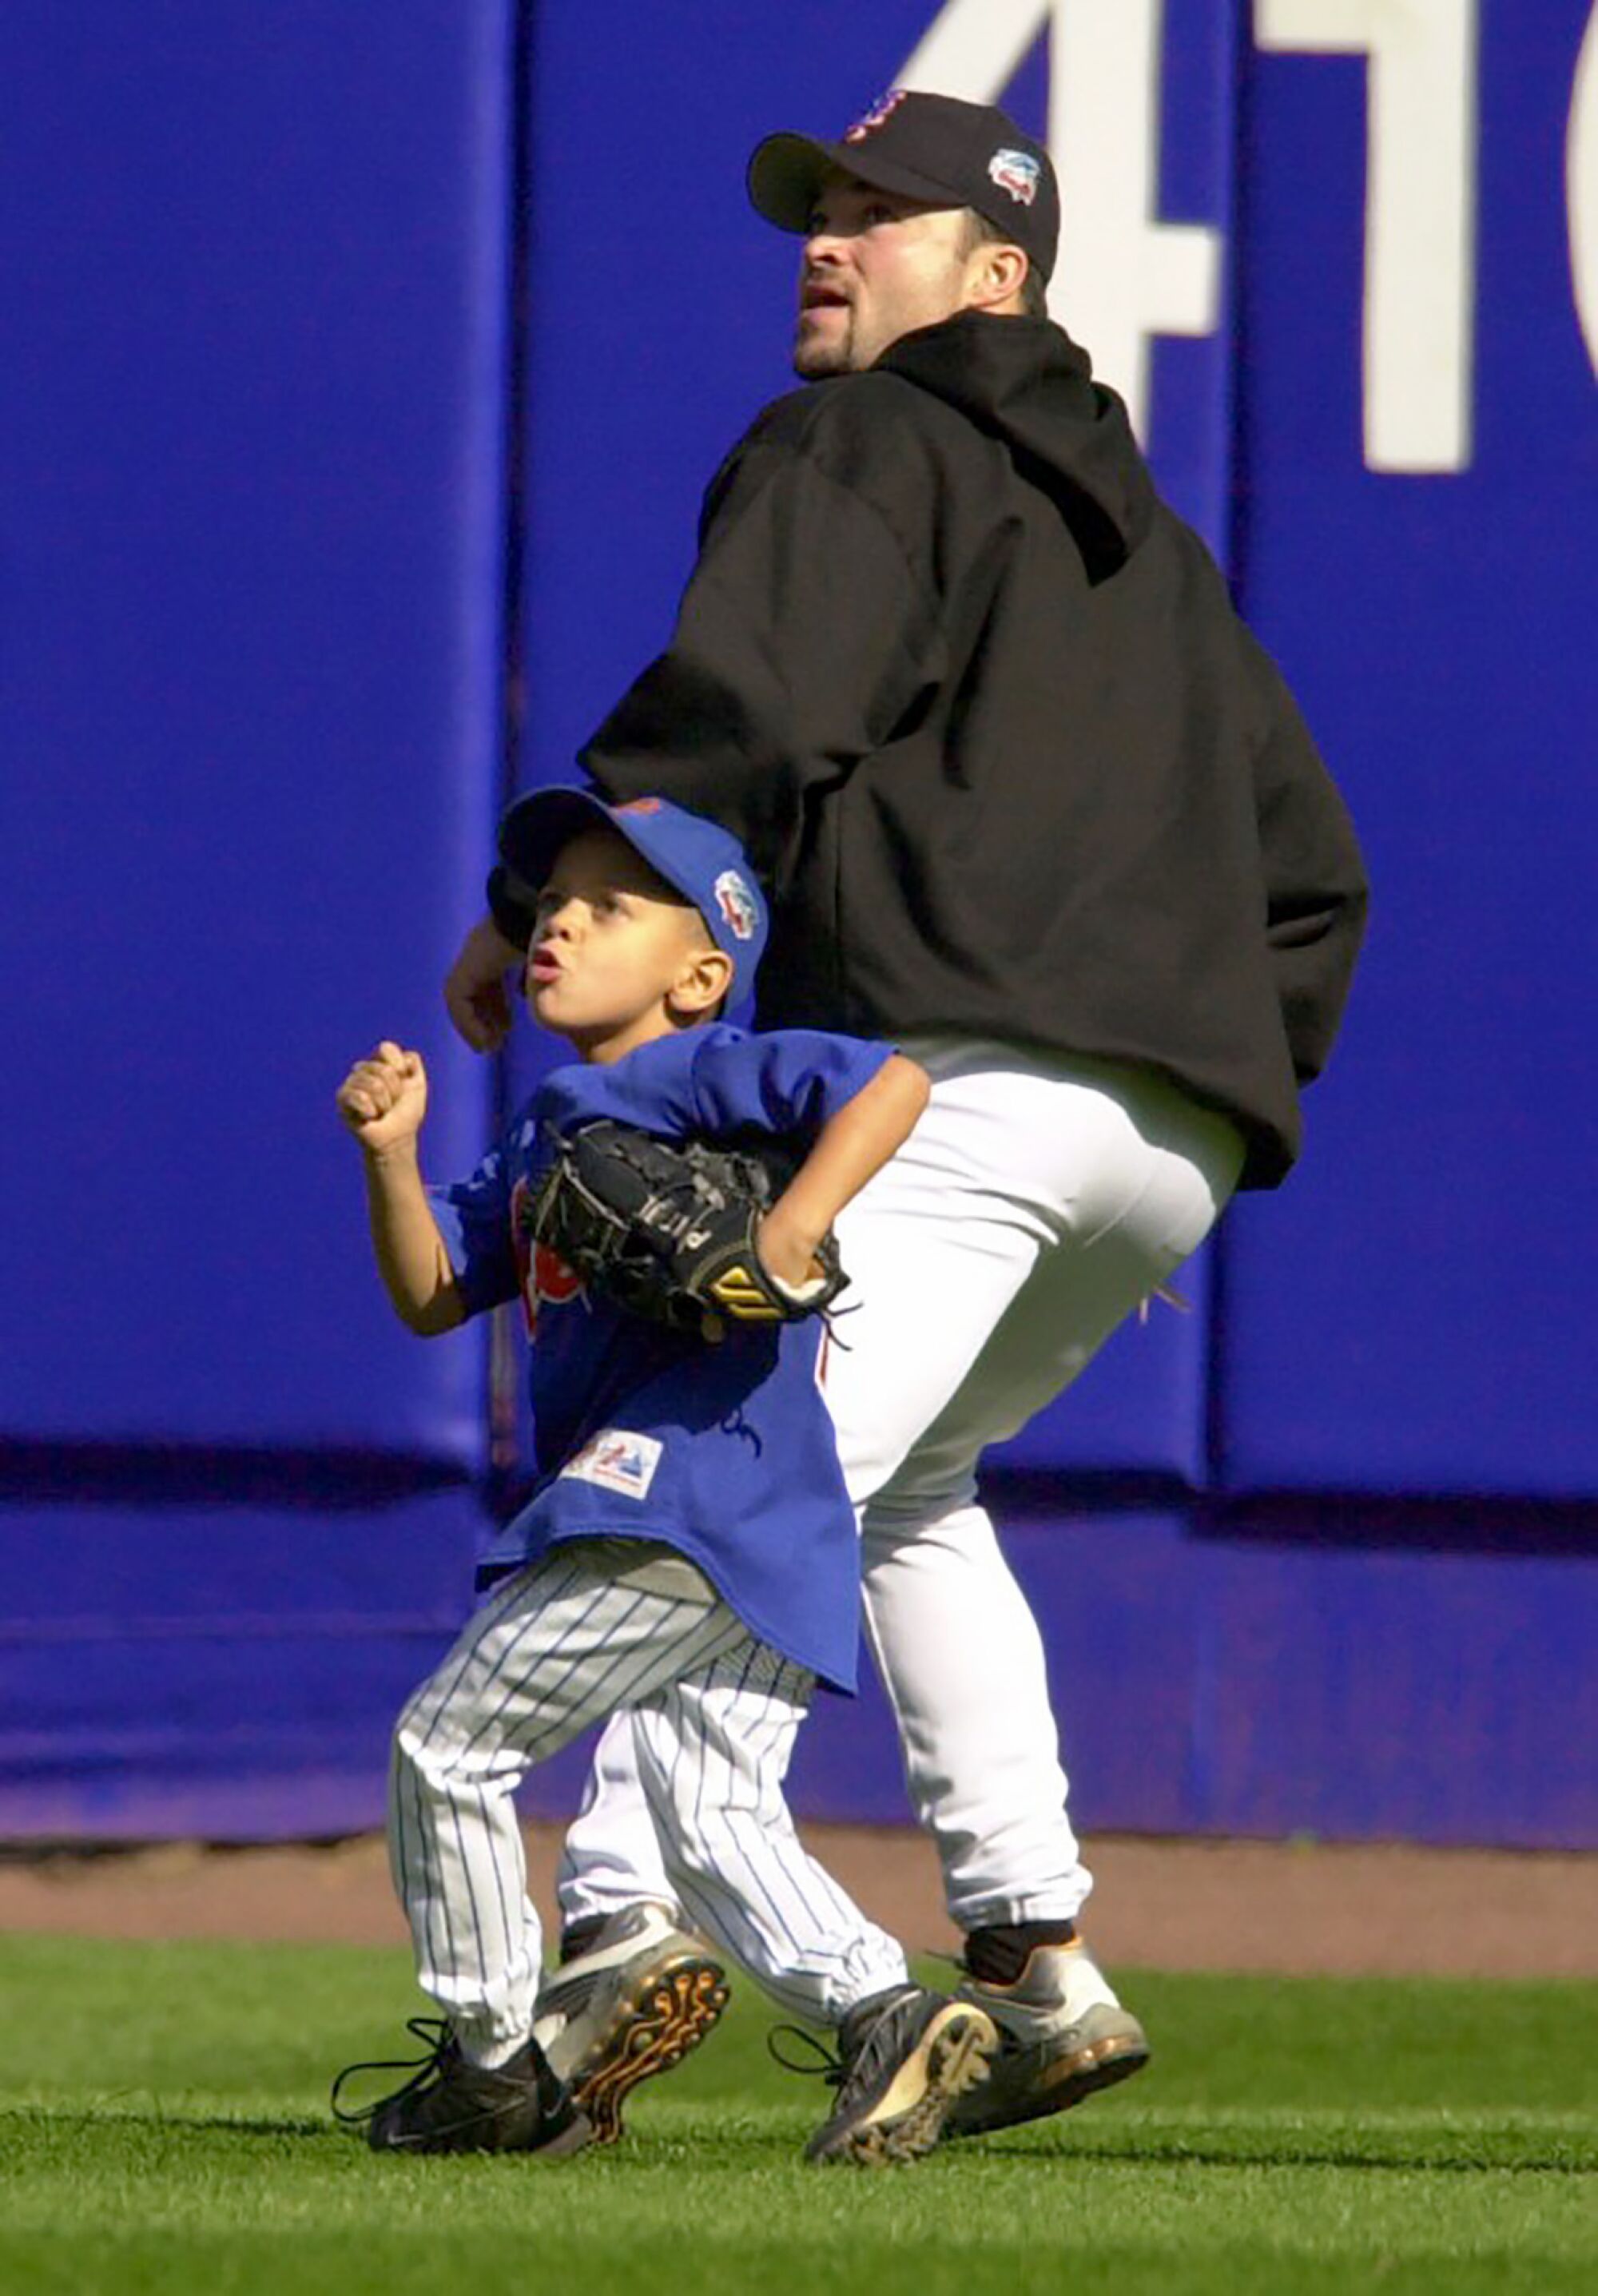 Ein junger Patrick Mahomes verfolgt im Jahr 2000 mit Mets Pitcher Mike Hampton einen Fly Ball 